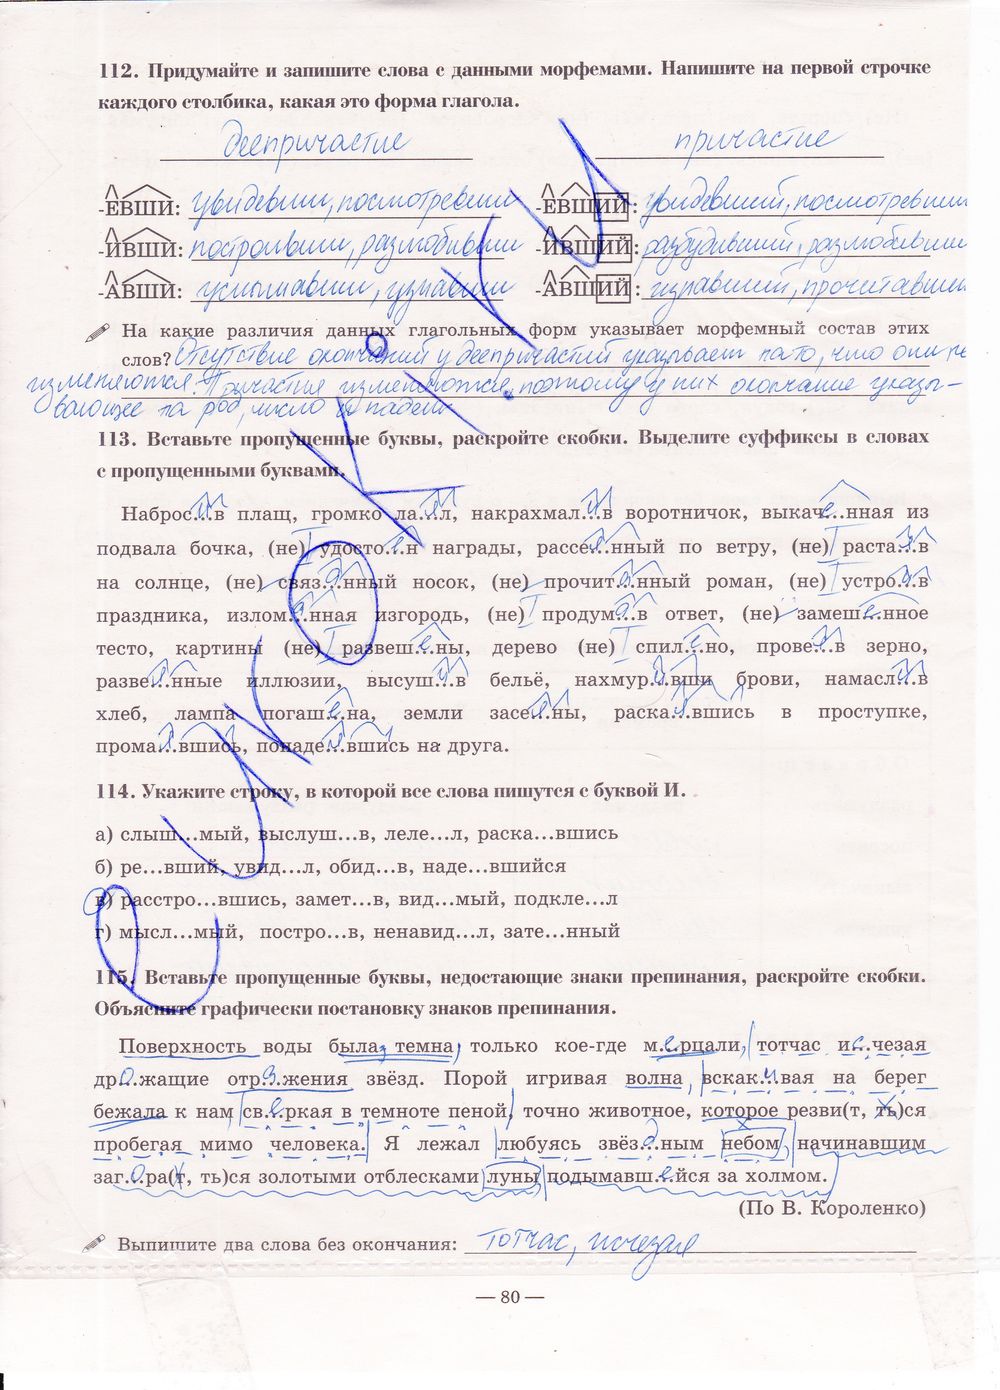 ГДЗ Русский язык 7 класс - стр. 80